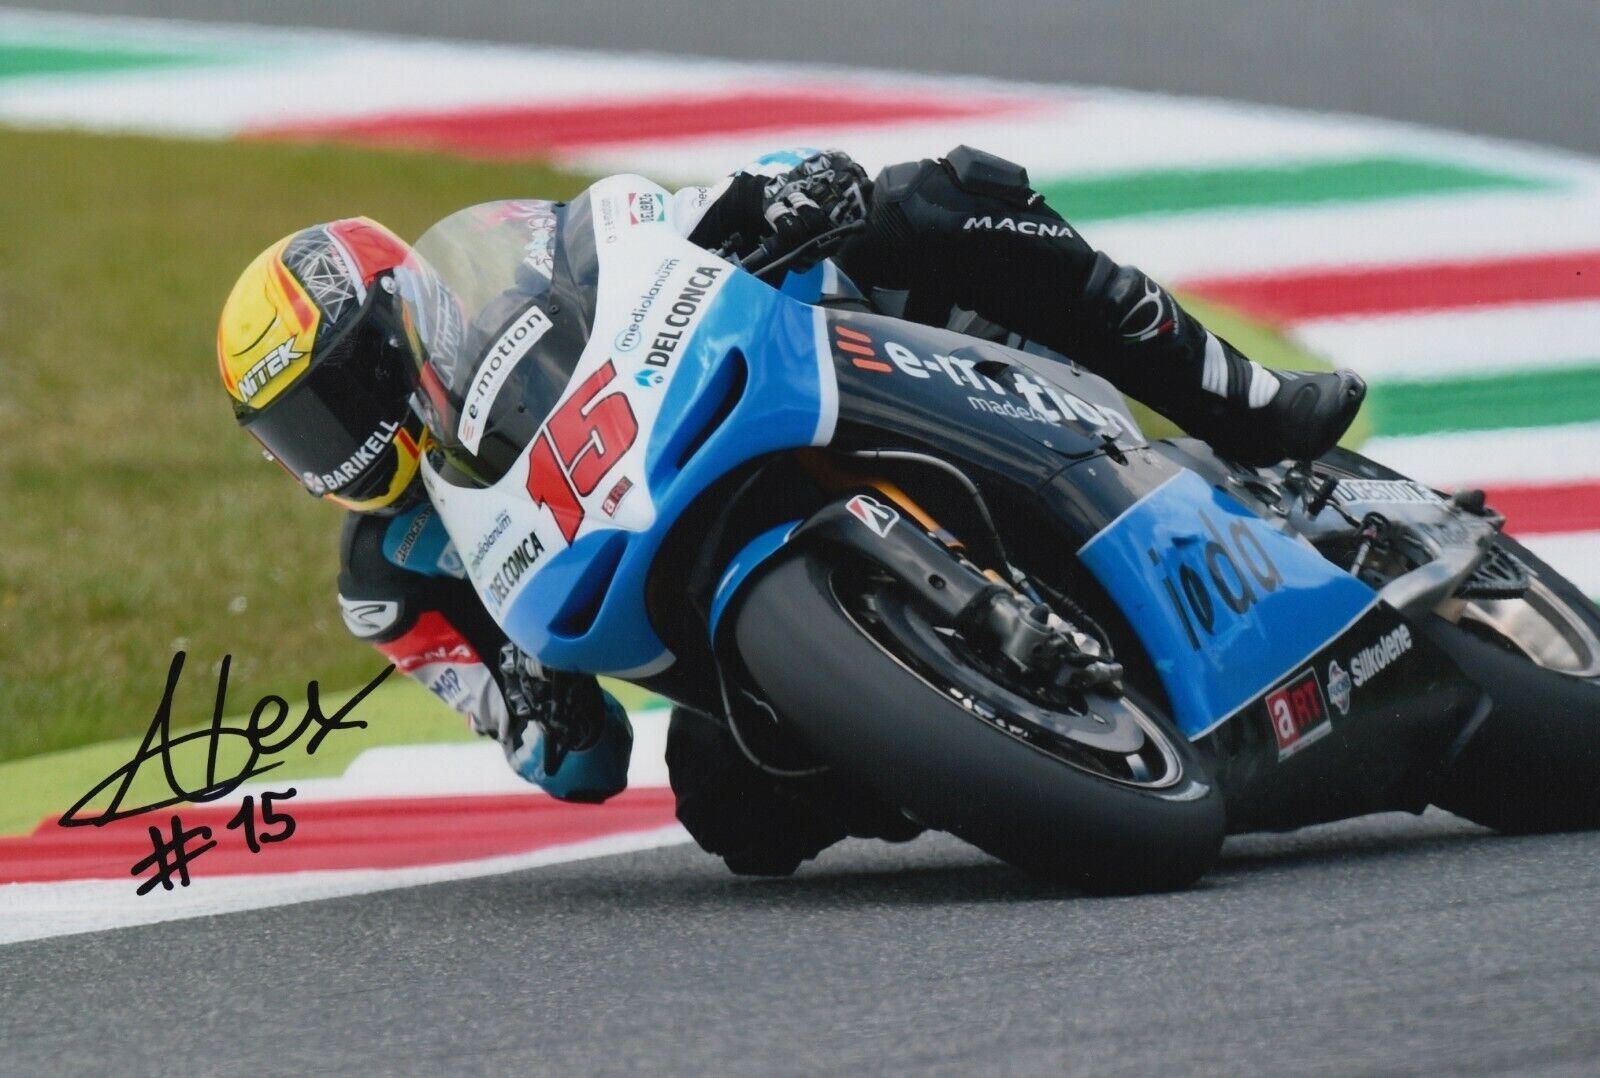 Alex de Angelis Hand Signed 12x8 Photo Poster painting - MotoGP Autograph 10.